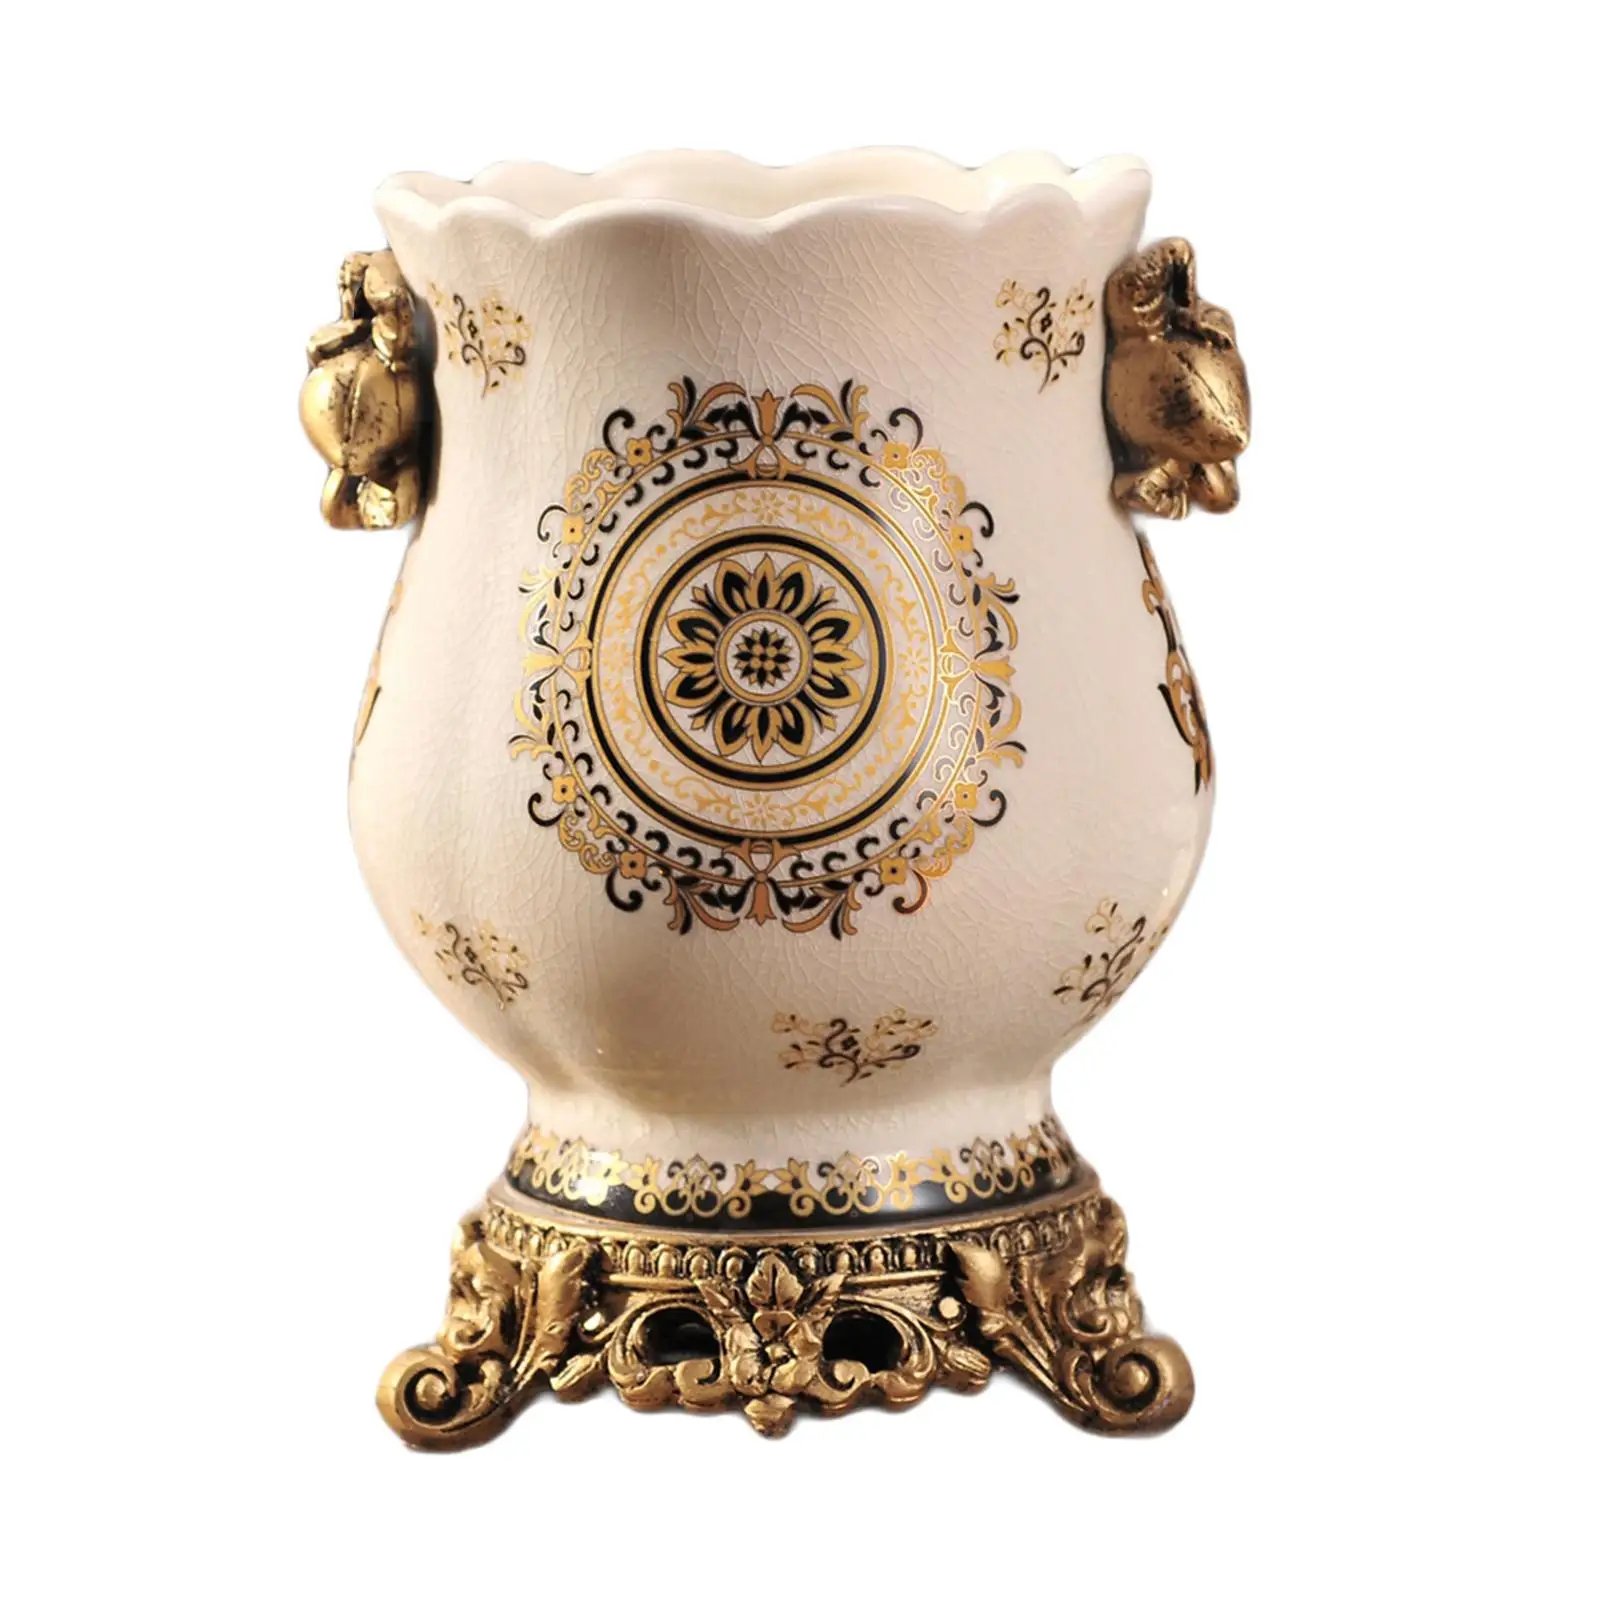 Vintage Ceramic Vase Wedding Gifts Art Crafts Photo Prop Elegant Flowerpot Handicraft for Bedroom Indoor Party Tabletop Decor